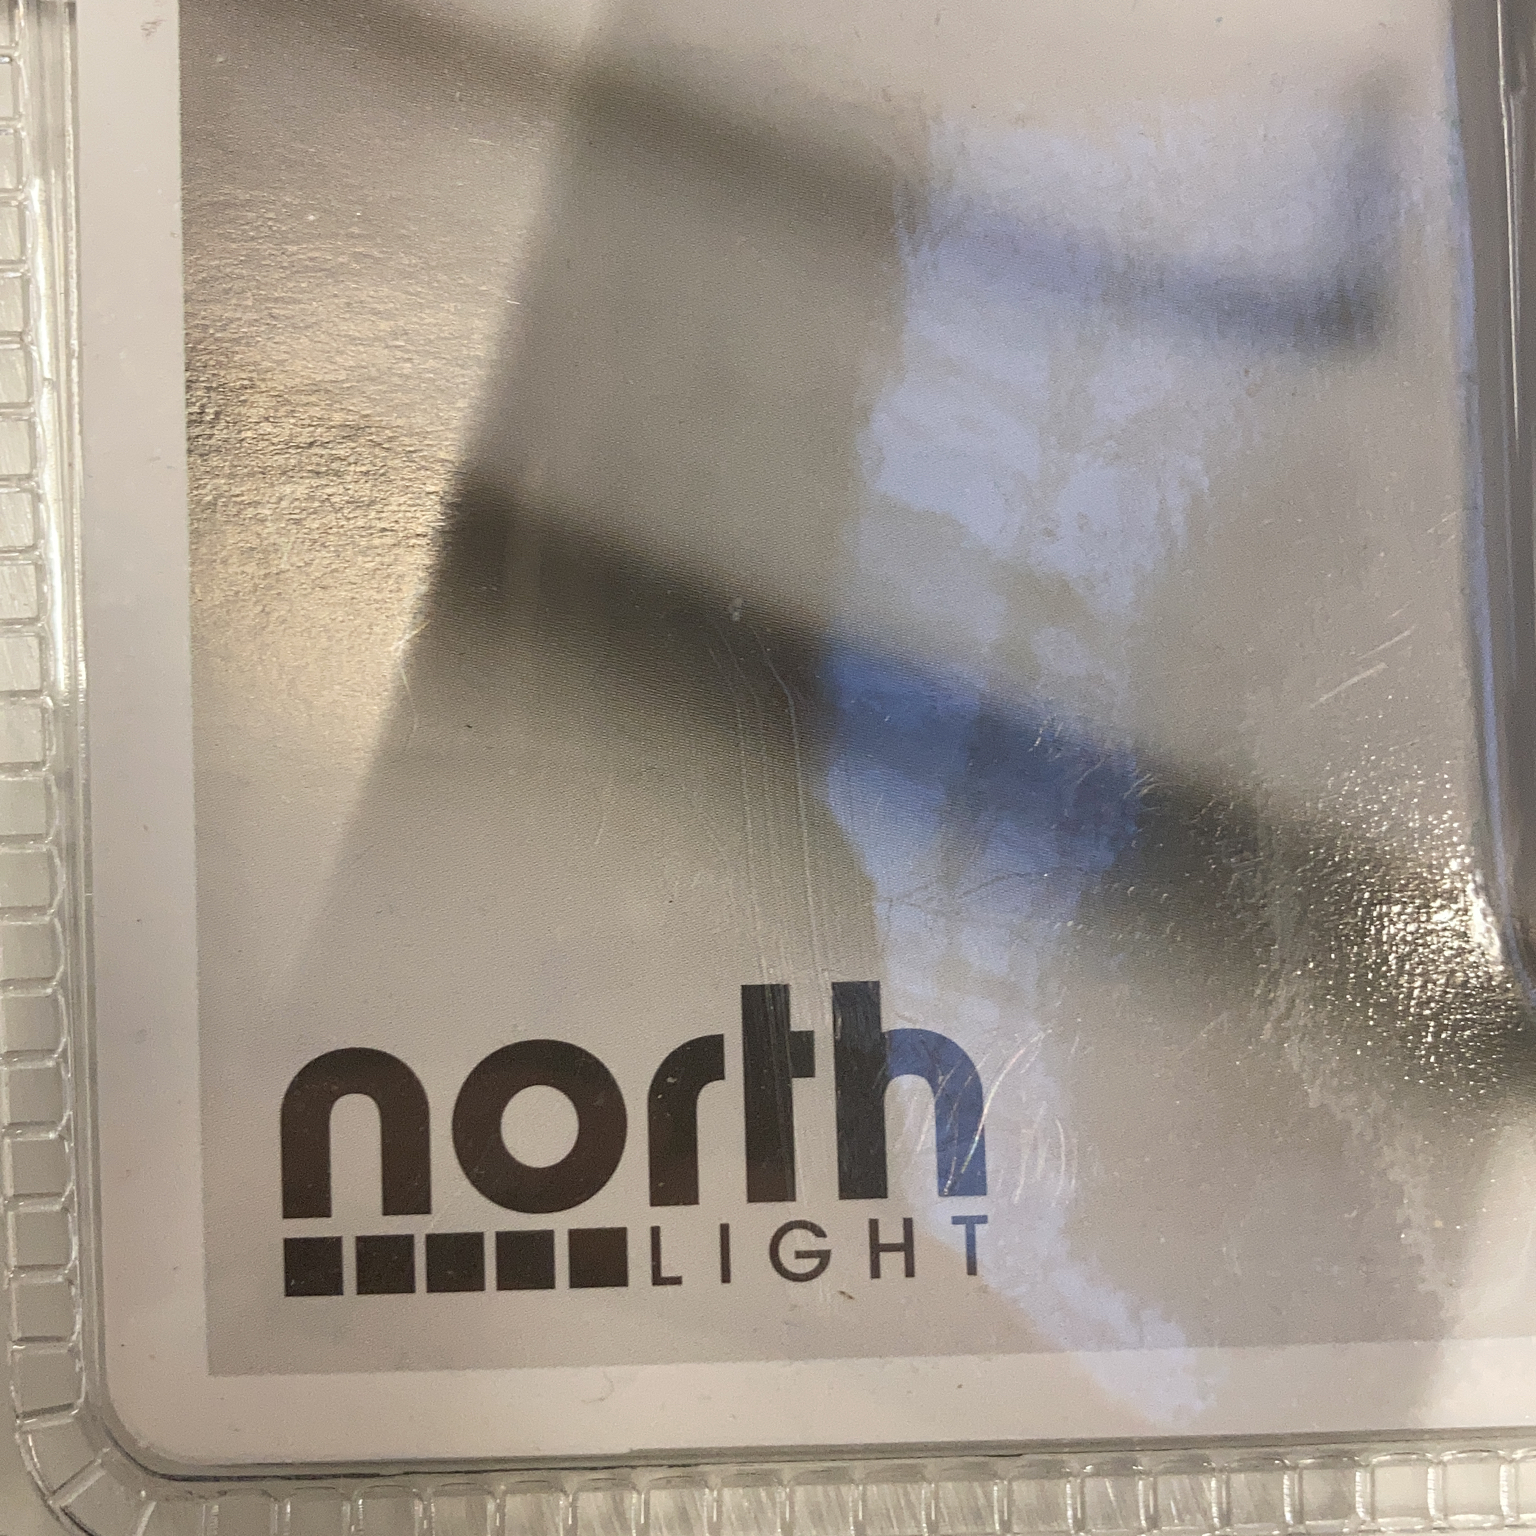 North Light